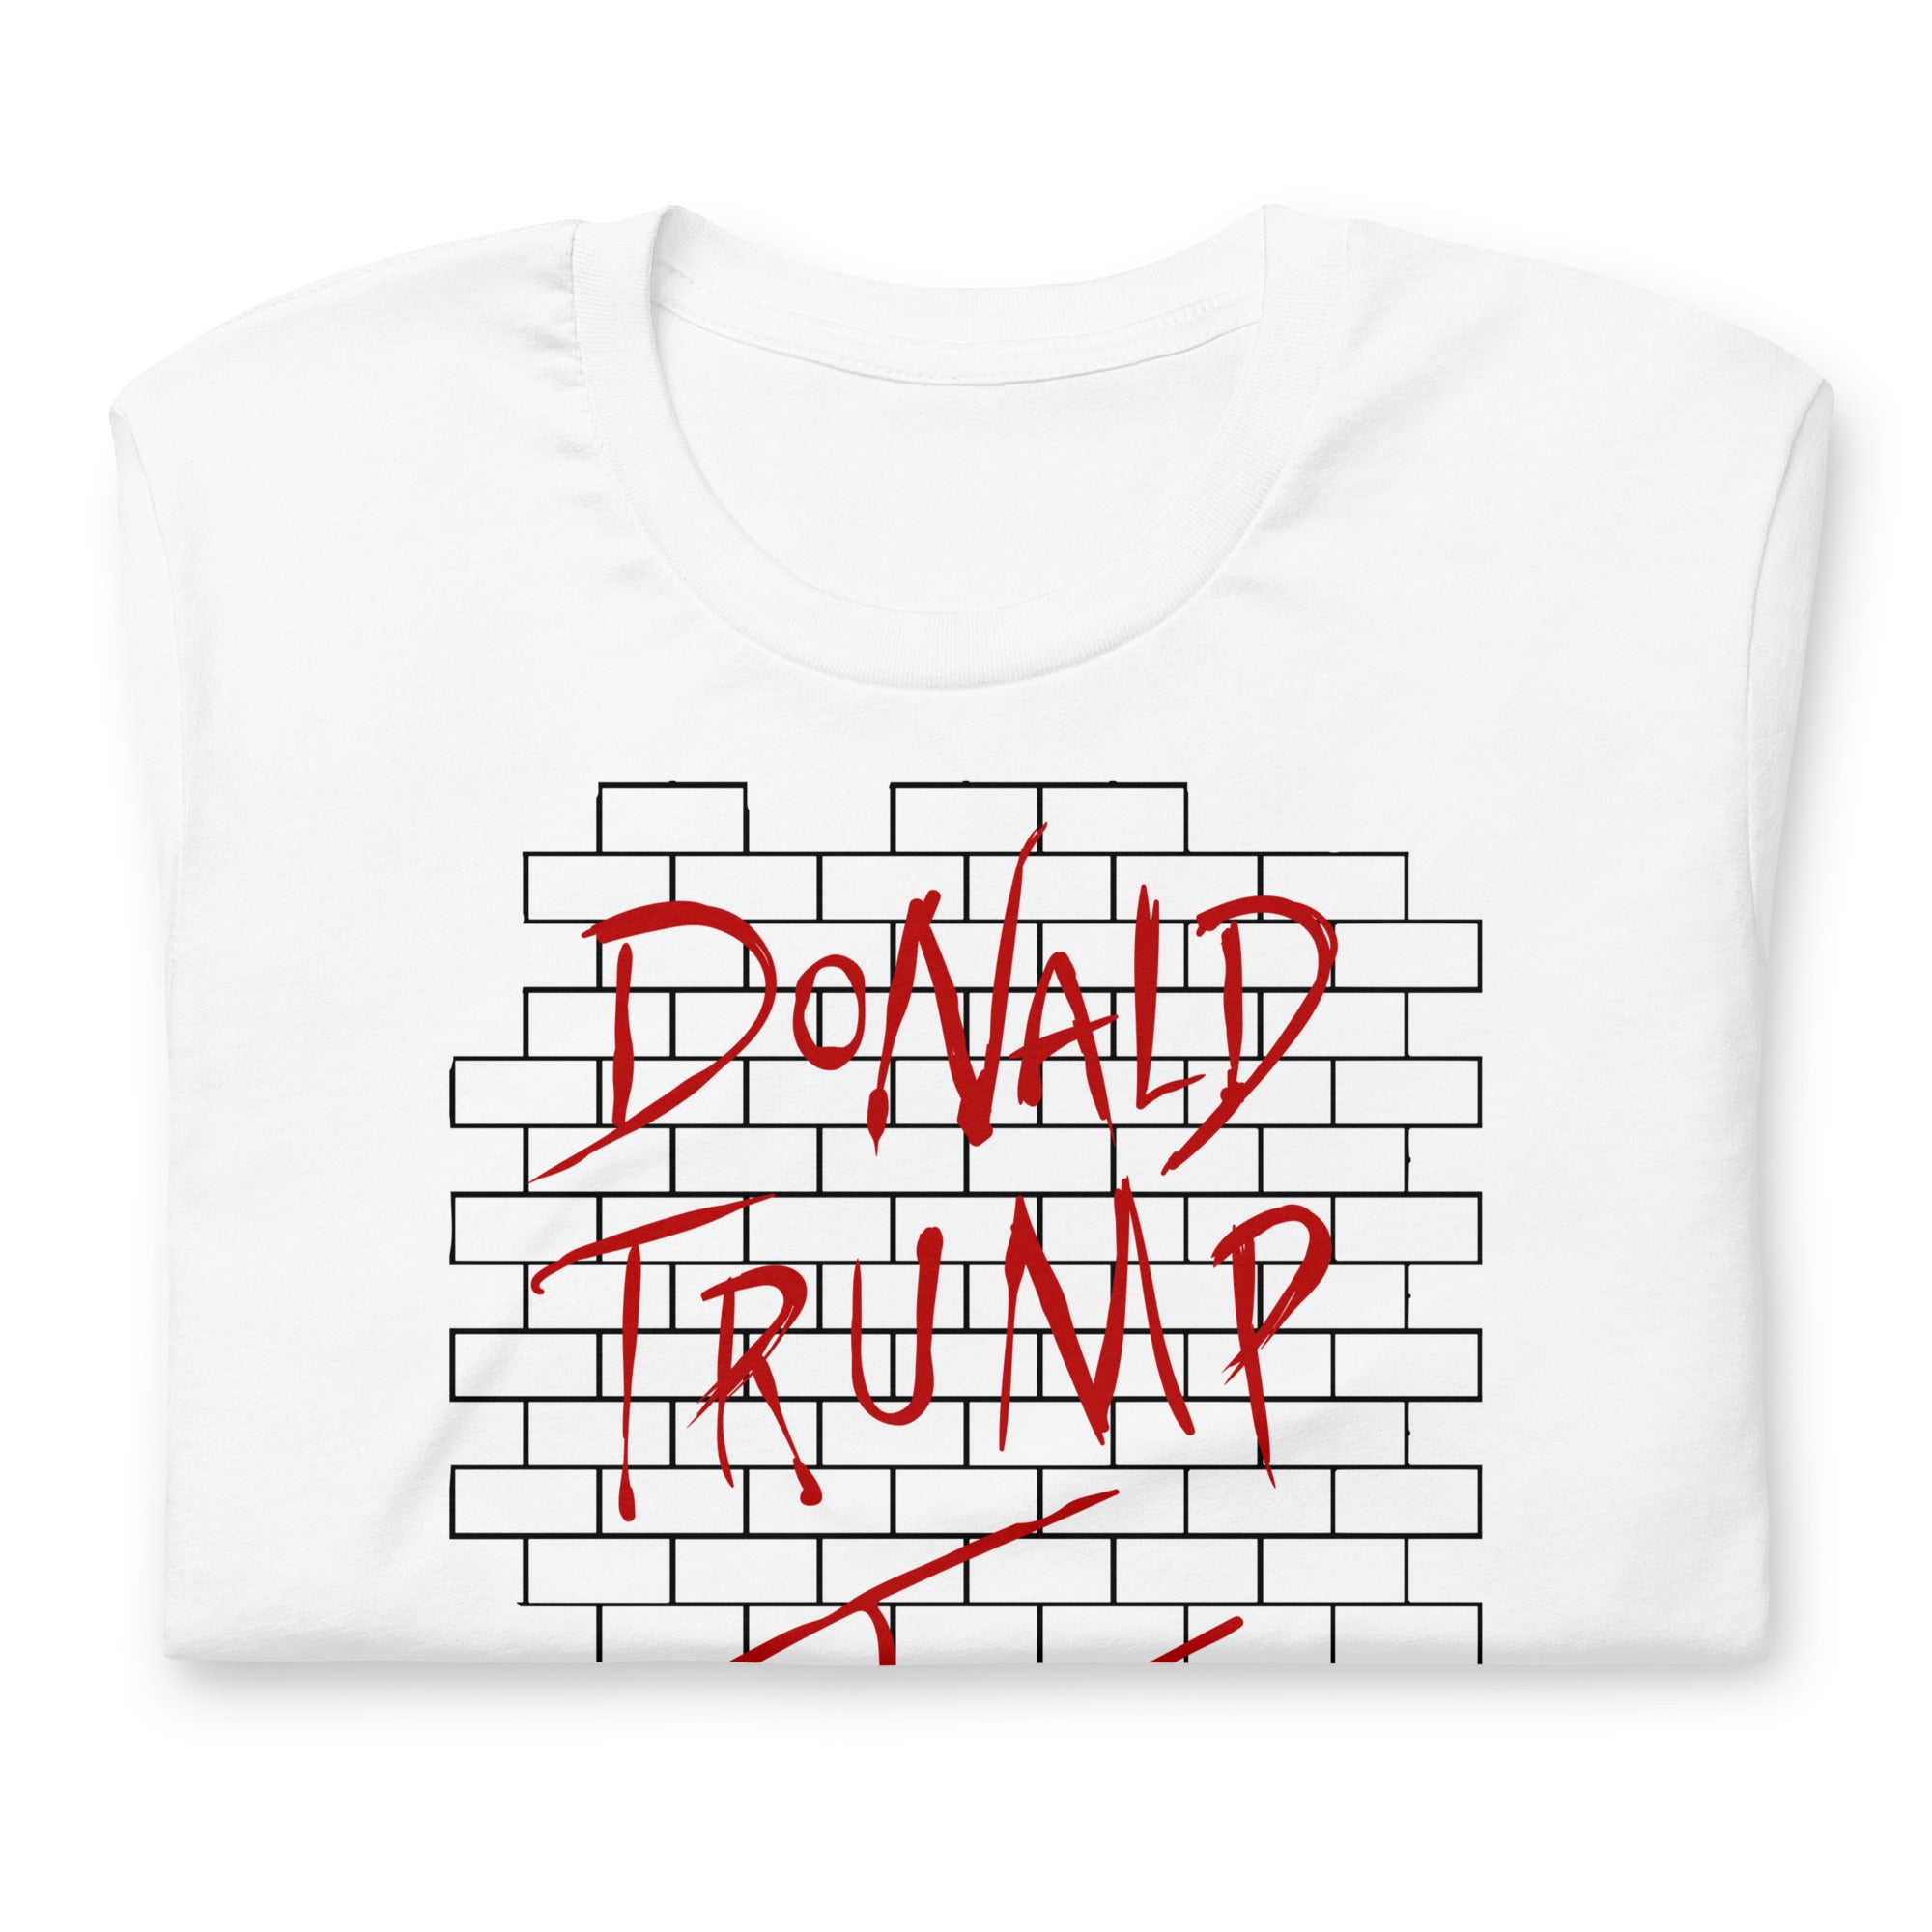 Donald Trump The Wall Parody Shirt